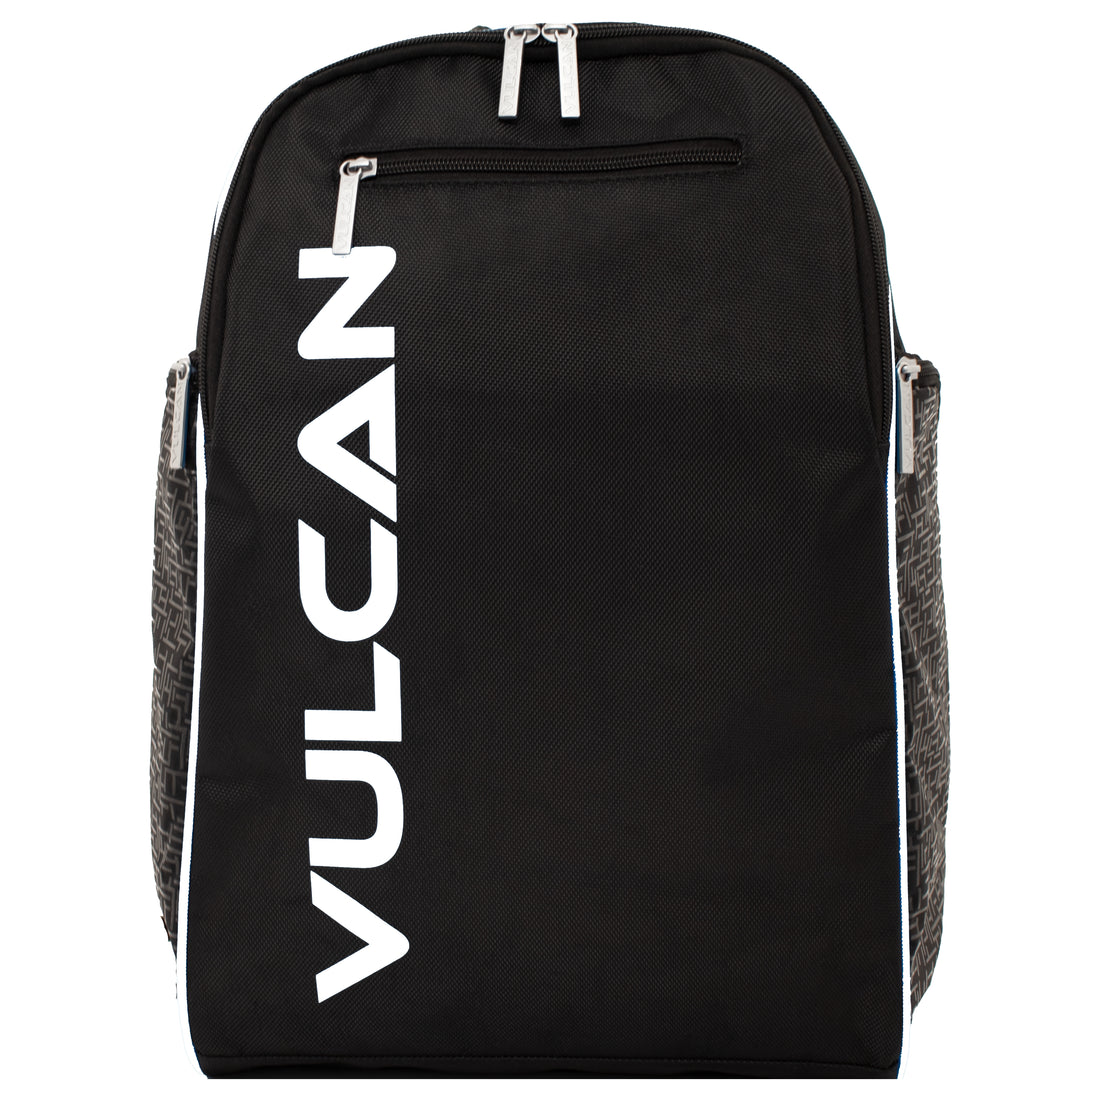 Vulcan Club Backpack